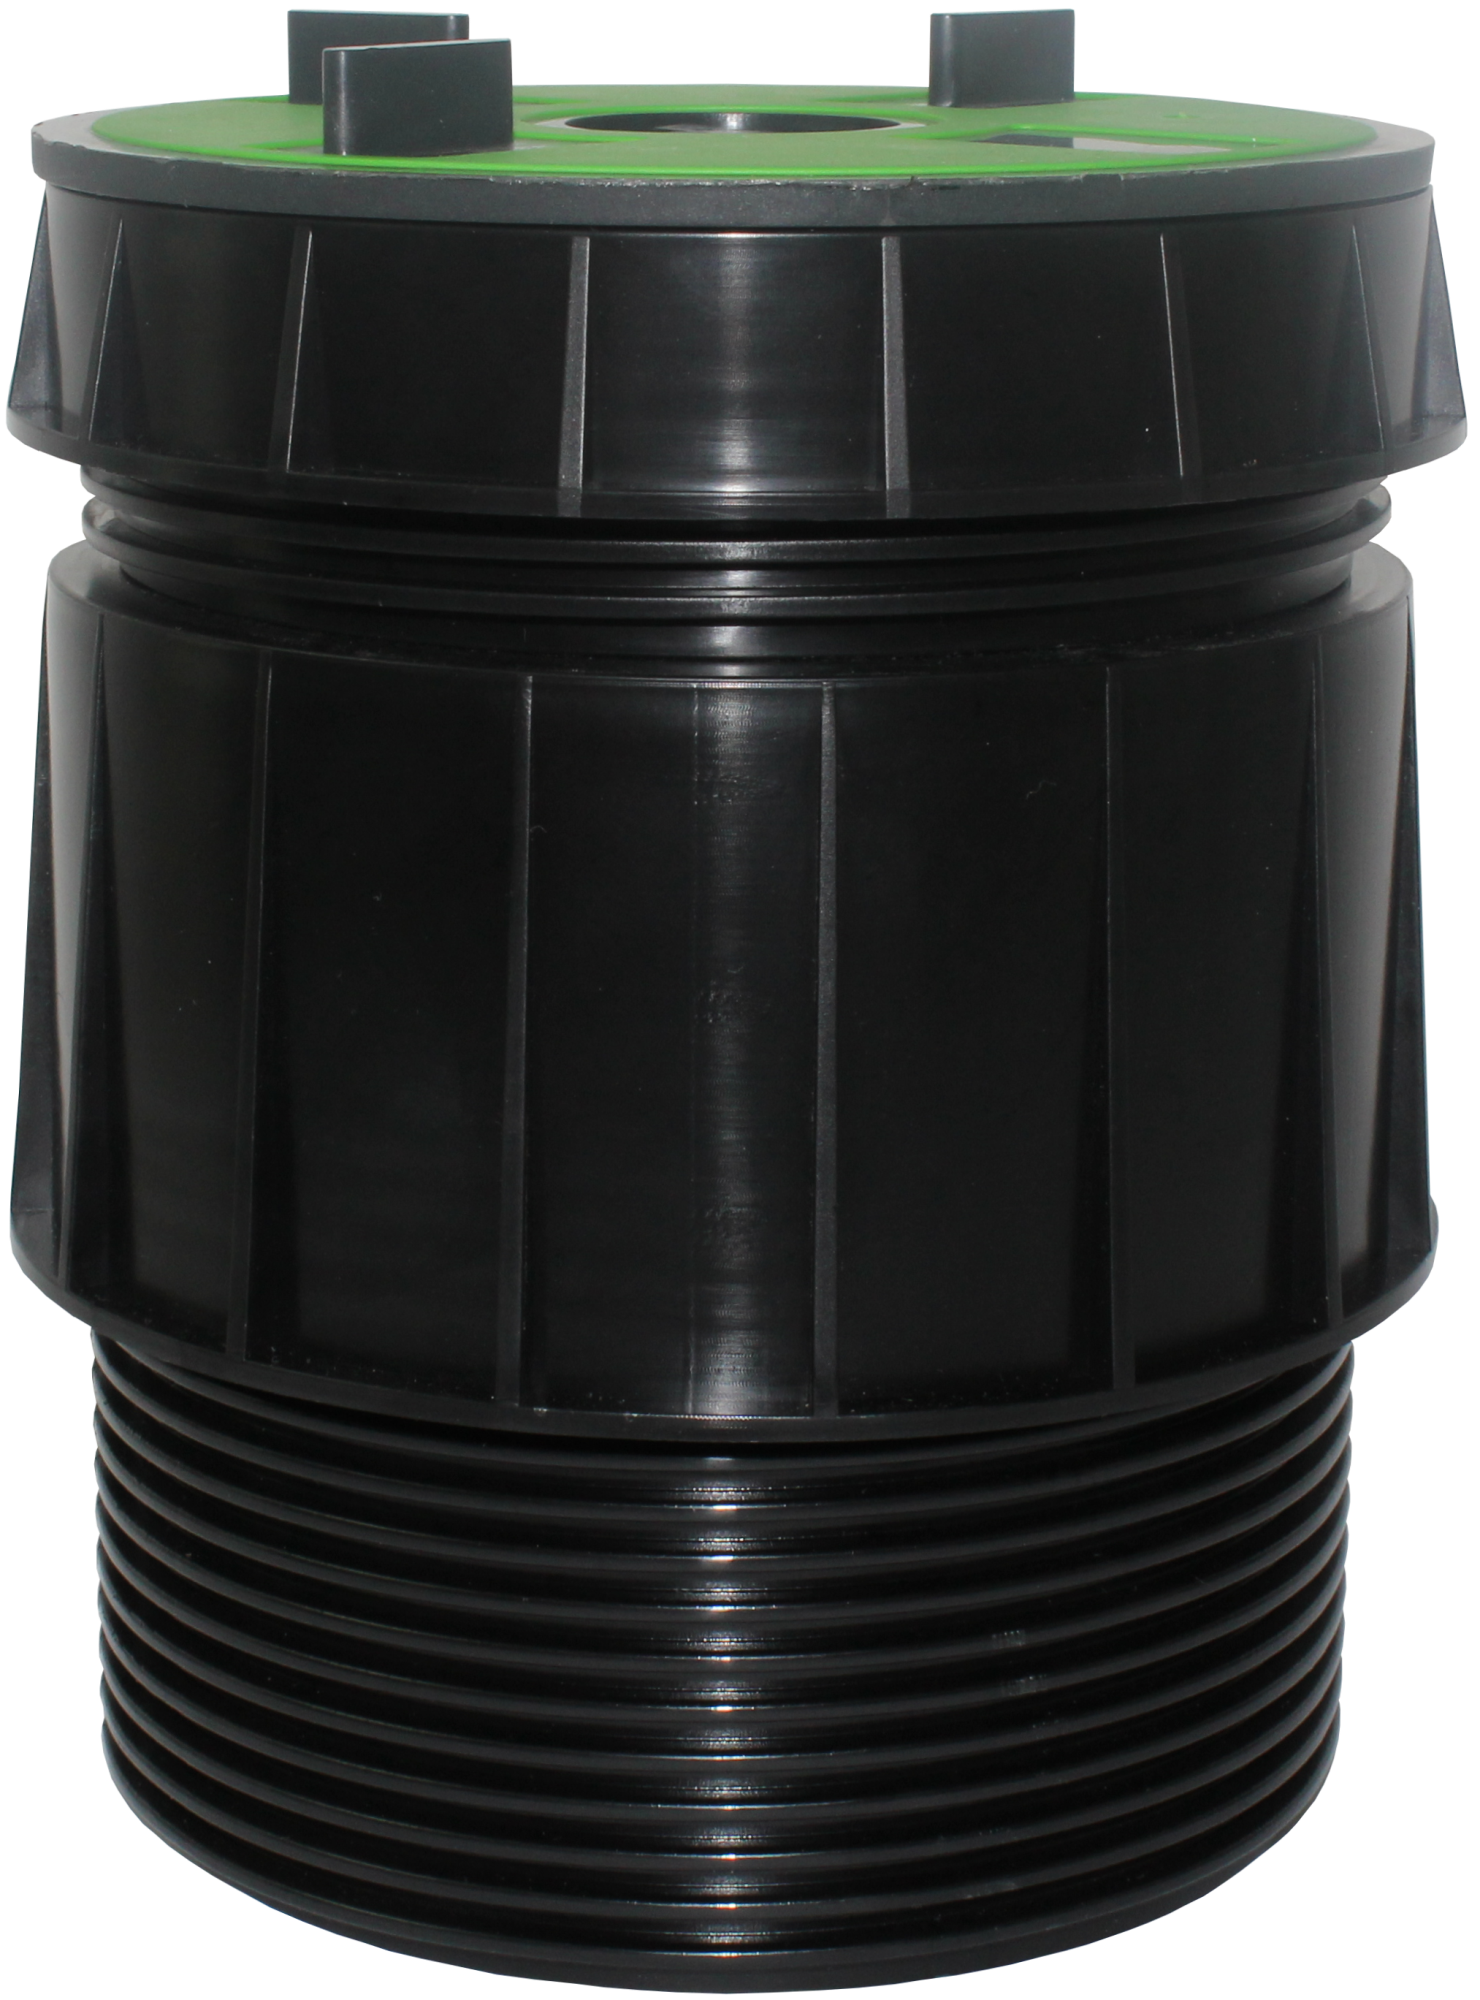 VOLFI Teleskop Dreh-Stelzlager, 5-tlg. Kunststoff, TL-VT100, 3Stege 4/10-140mm, verstb.100-175mm